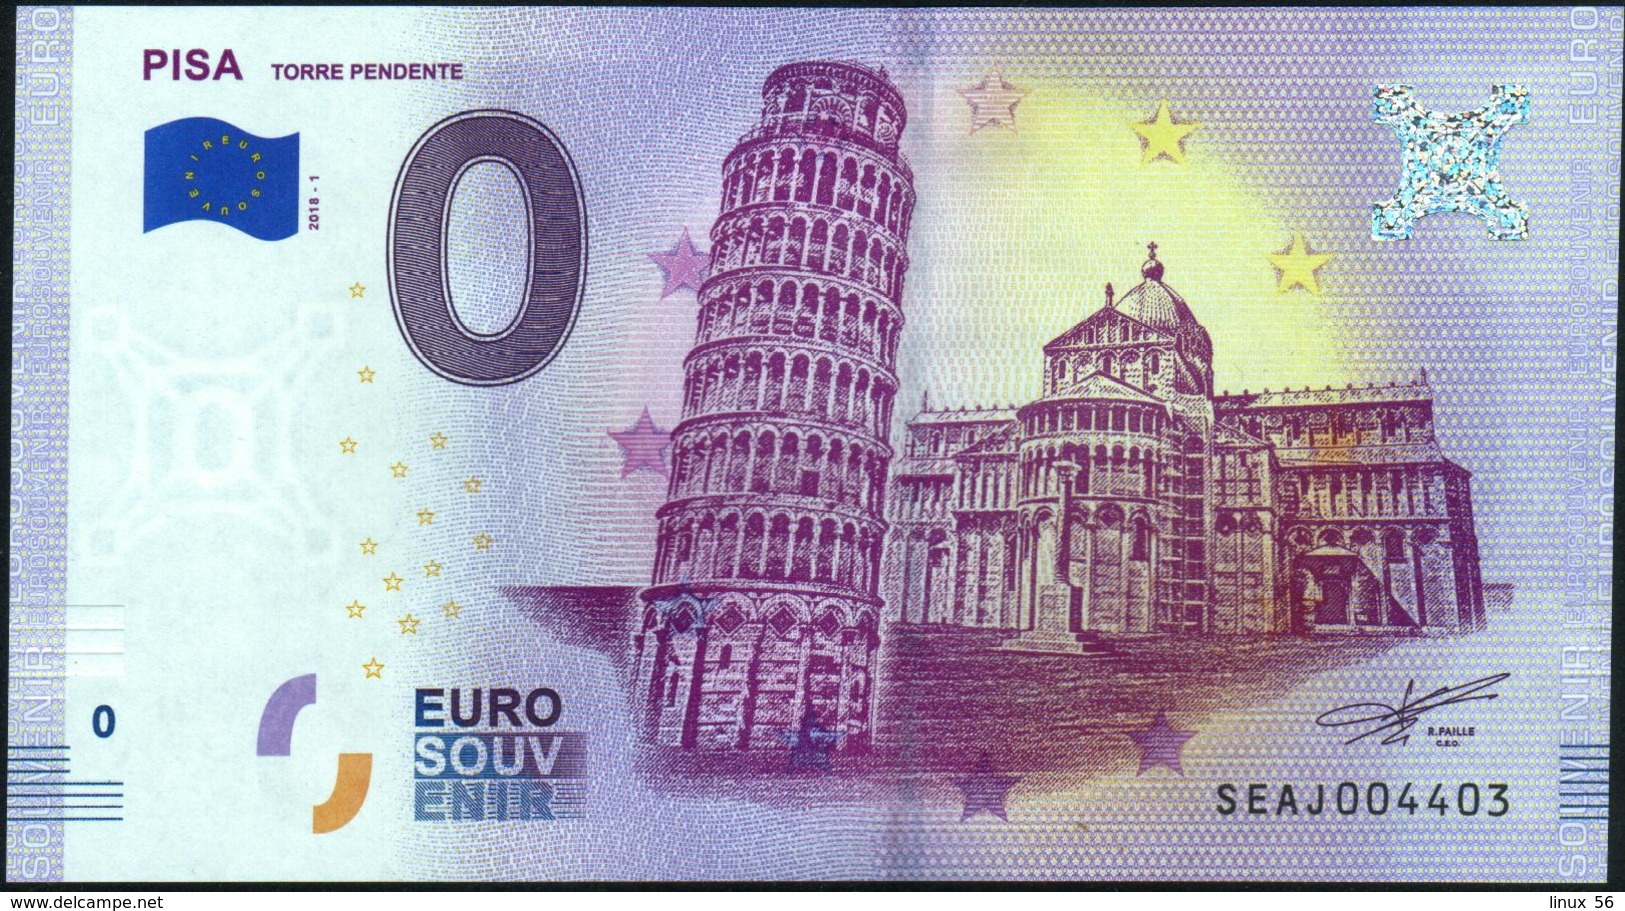 Zero - BILLET EURO O Souvenir - PISA Torre Pendente 2018-1set UNC {Italy} - Privéproeven